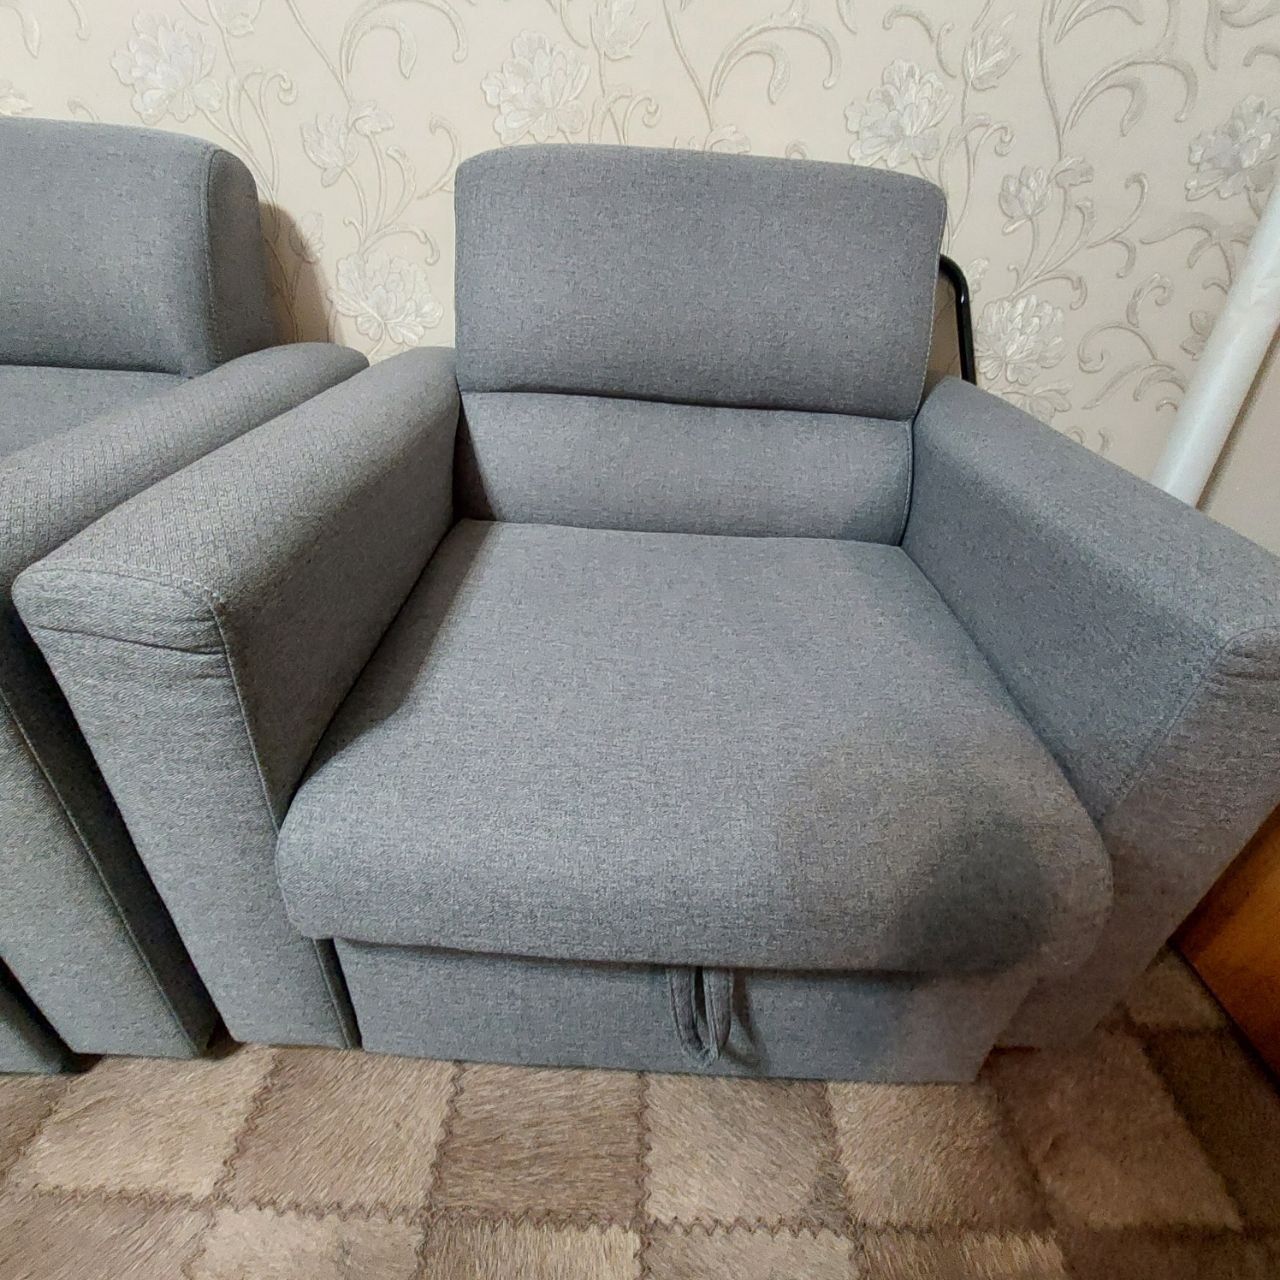 Мягкий уголок (диван кровать, кресло)